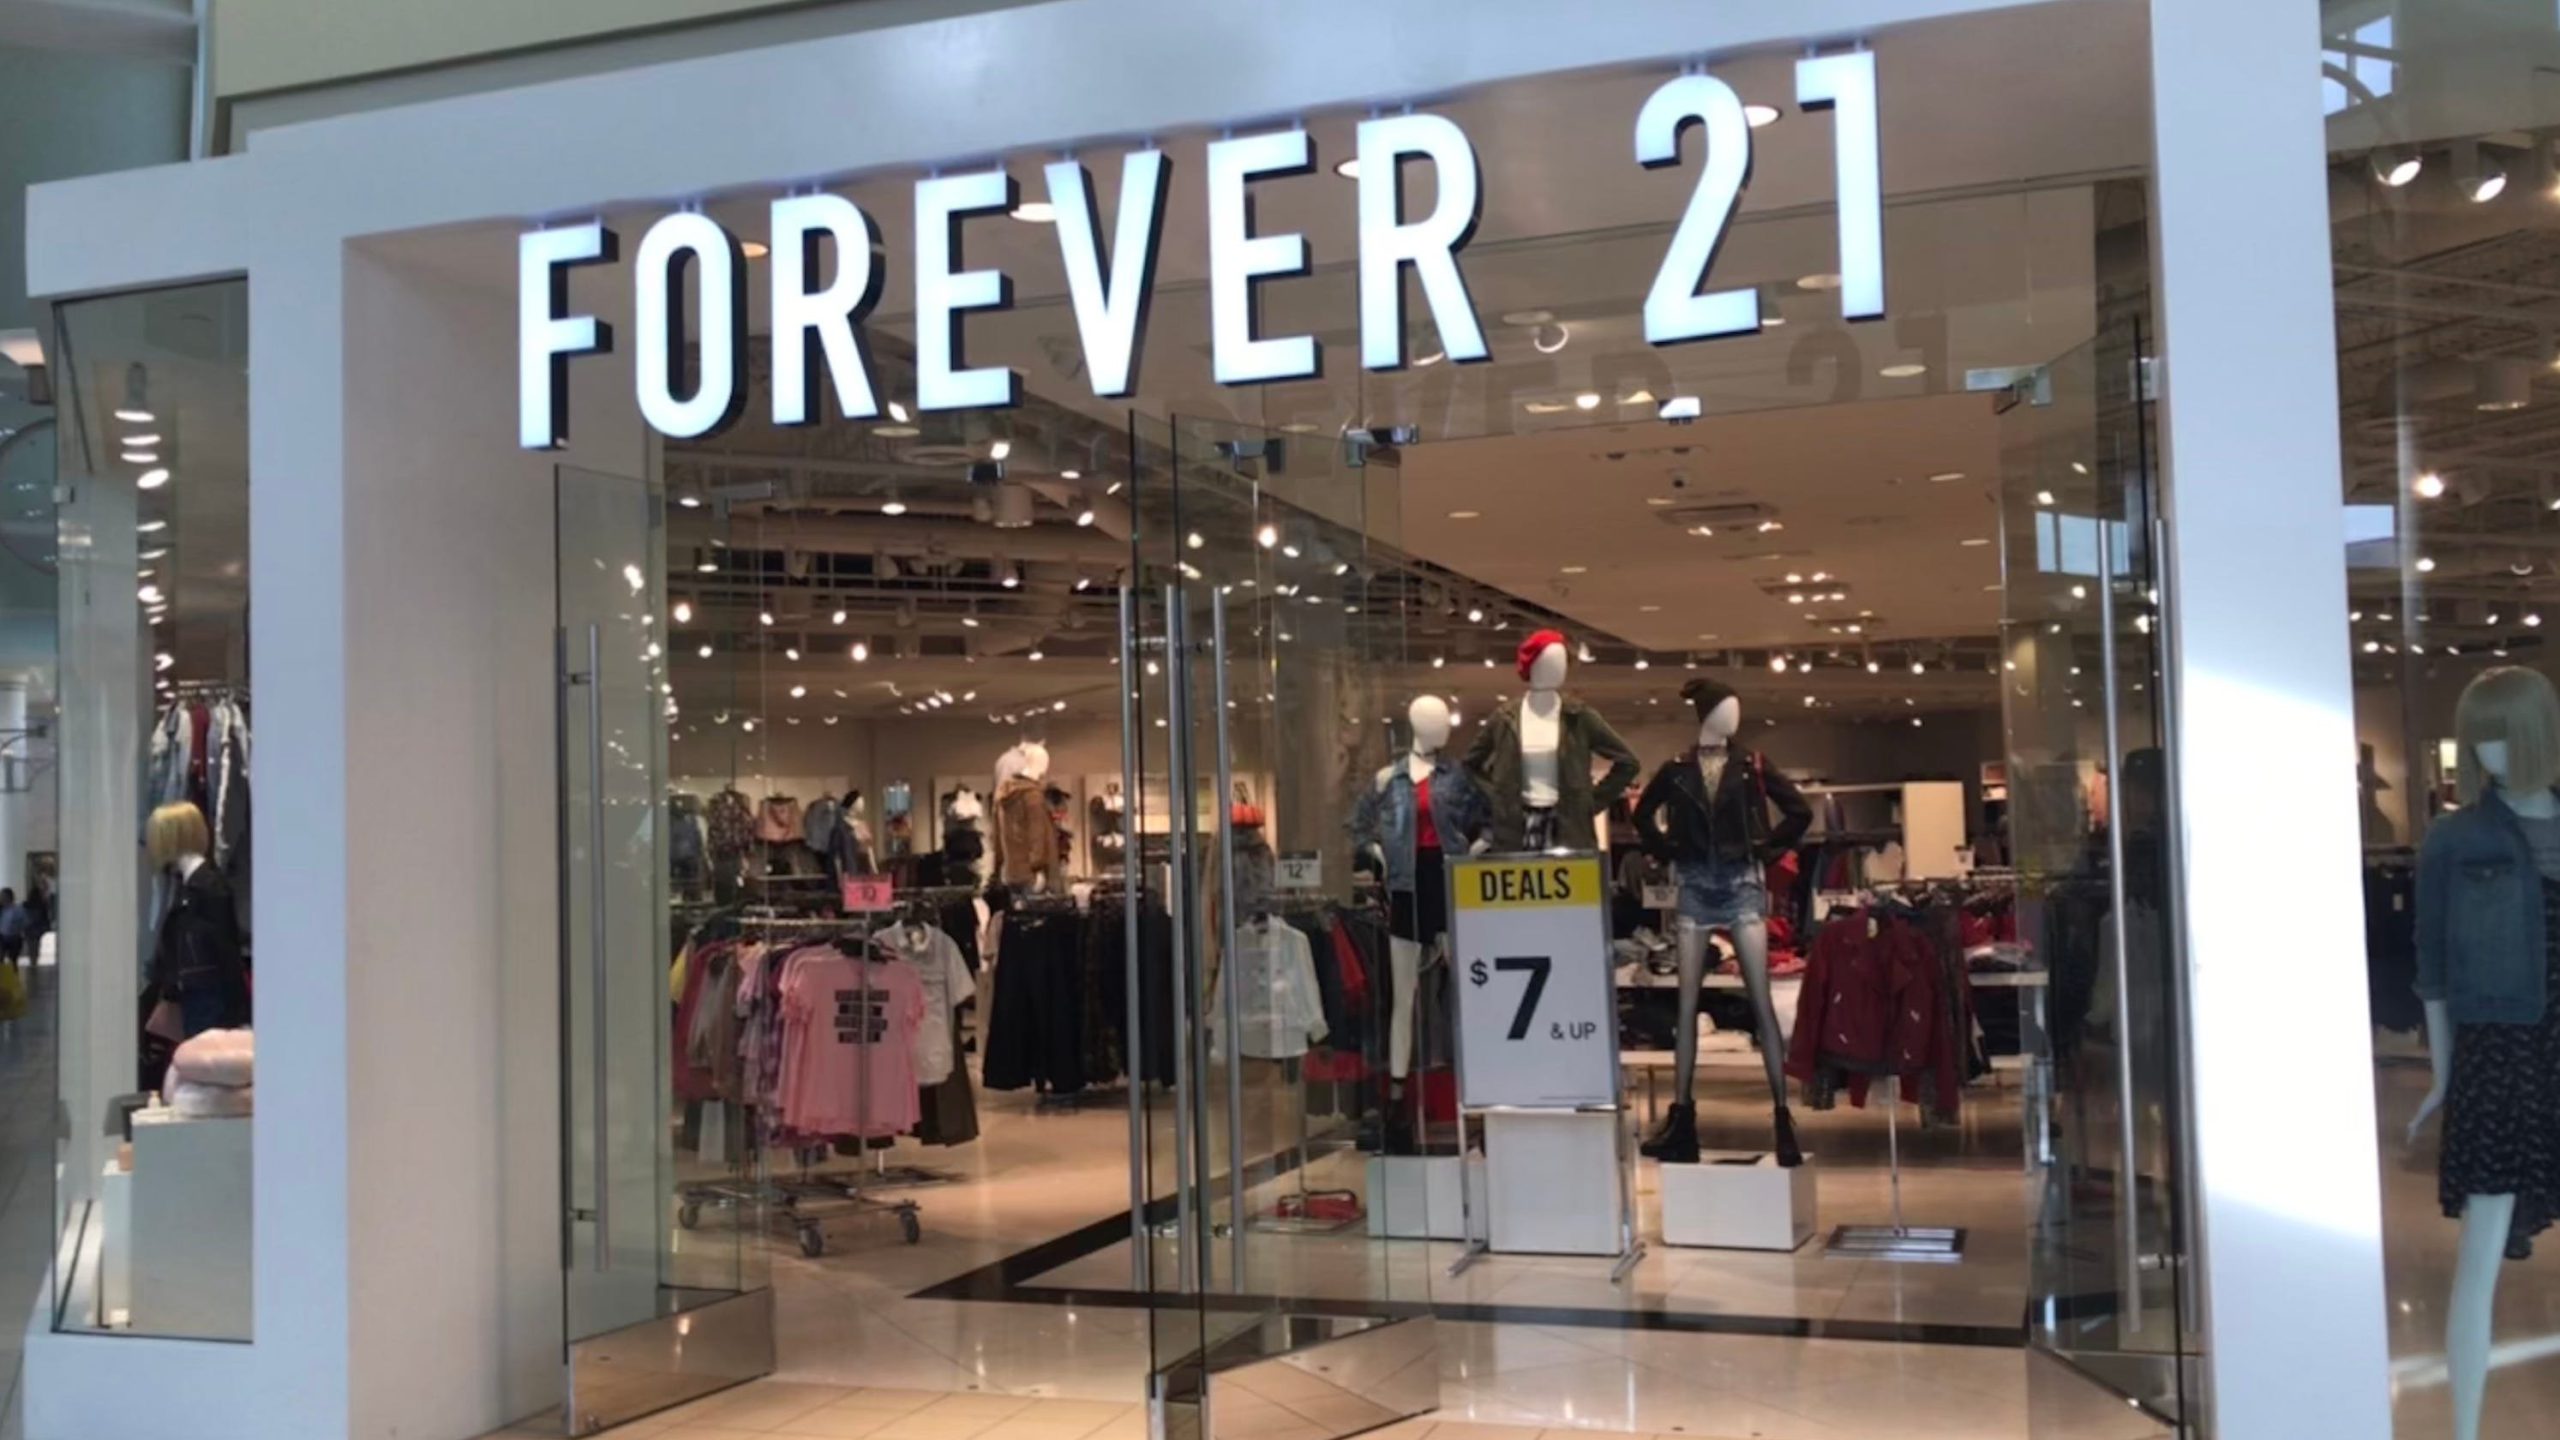  Brandul de modă Forever 21 a solicitat protecţia faţă de creditori. Va închide magazinele din Europa si Asia